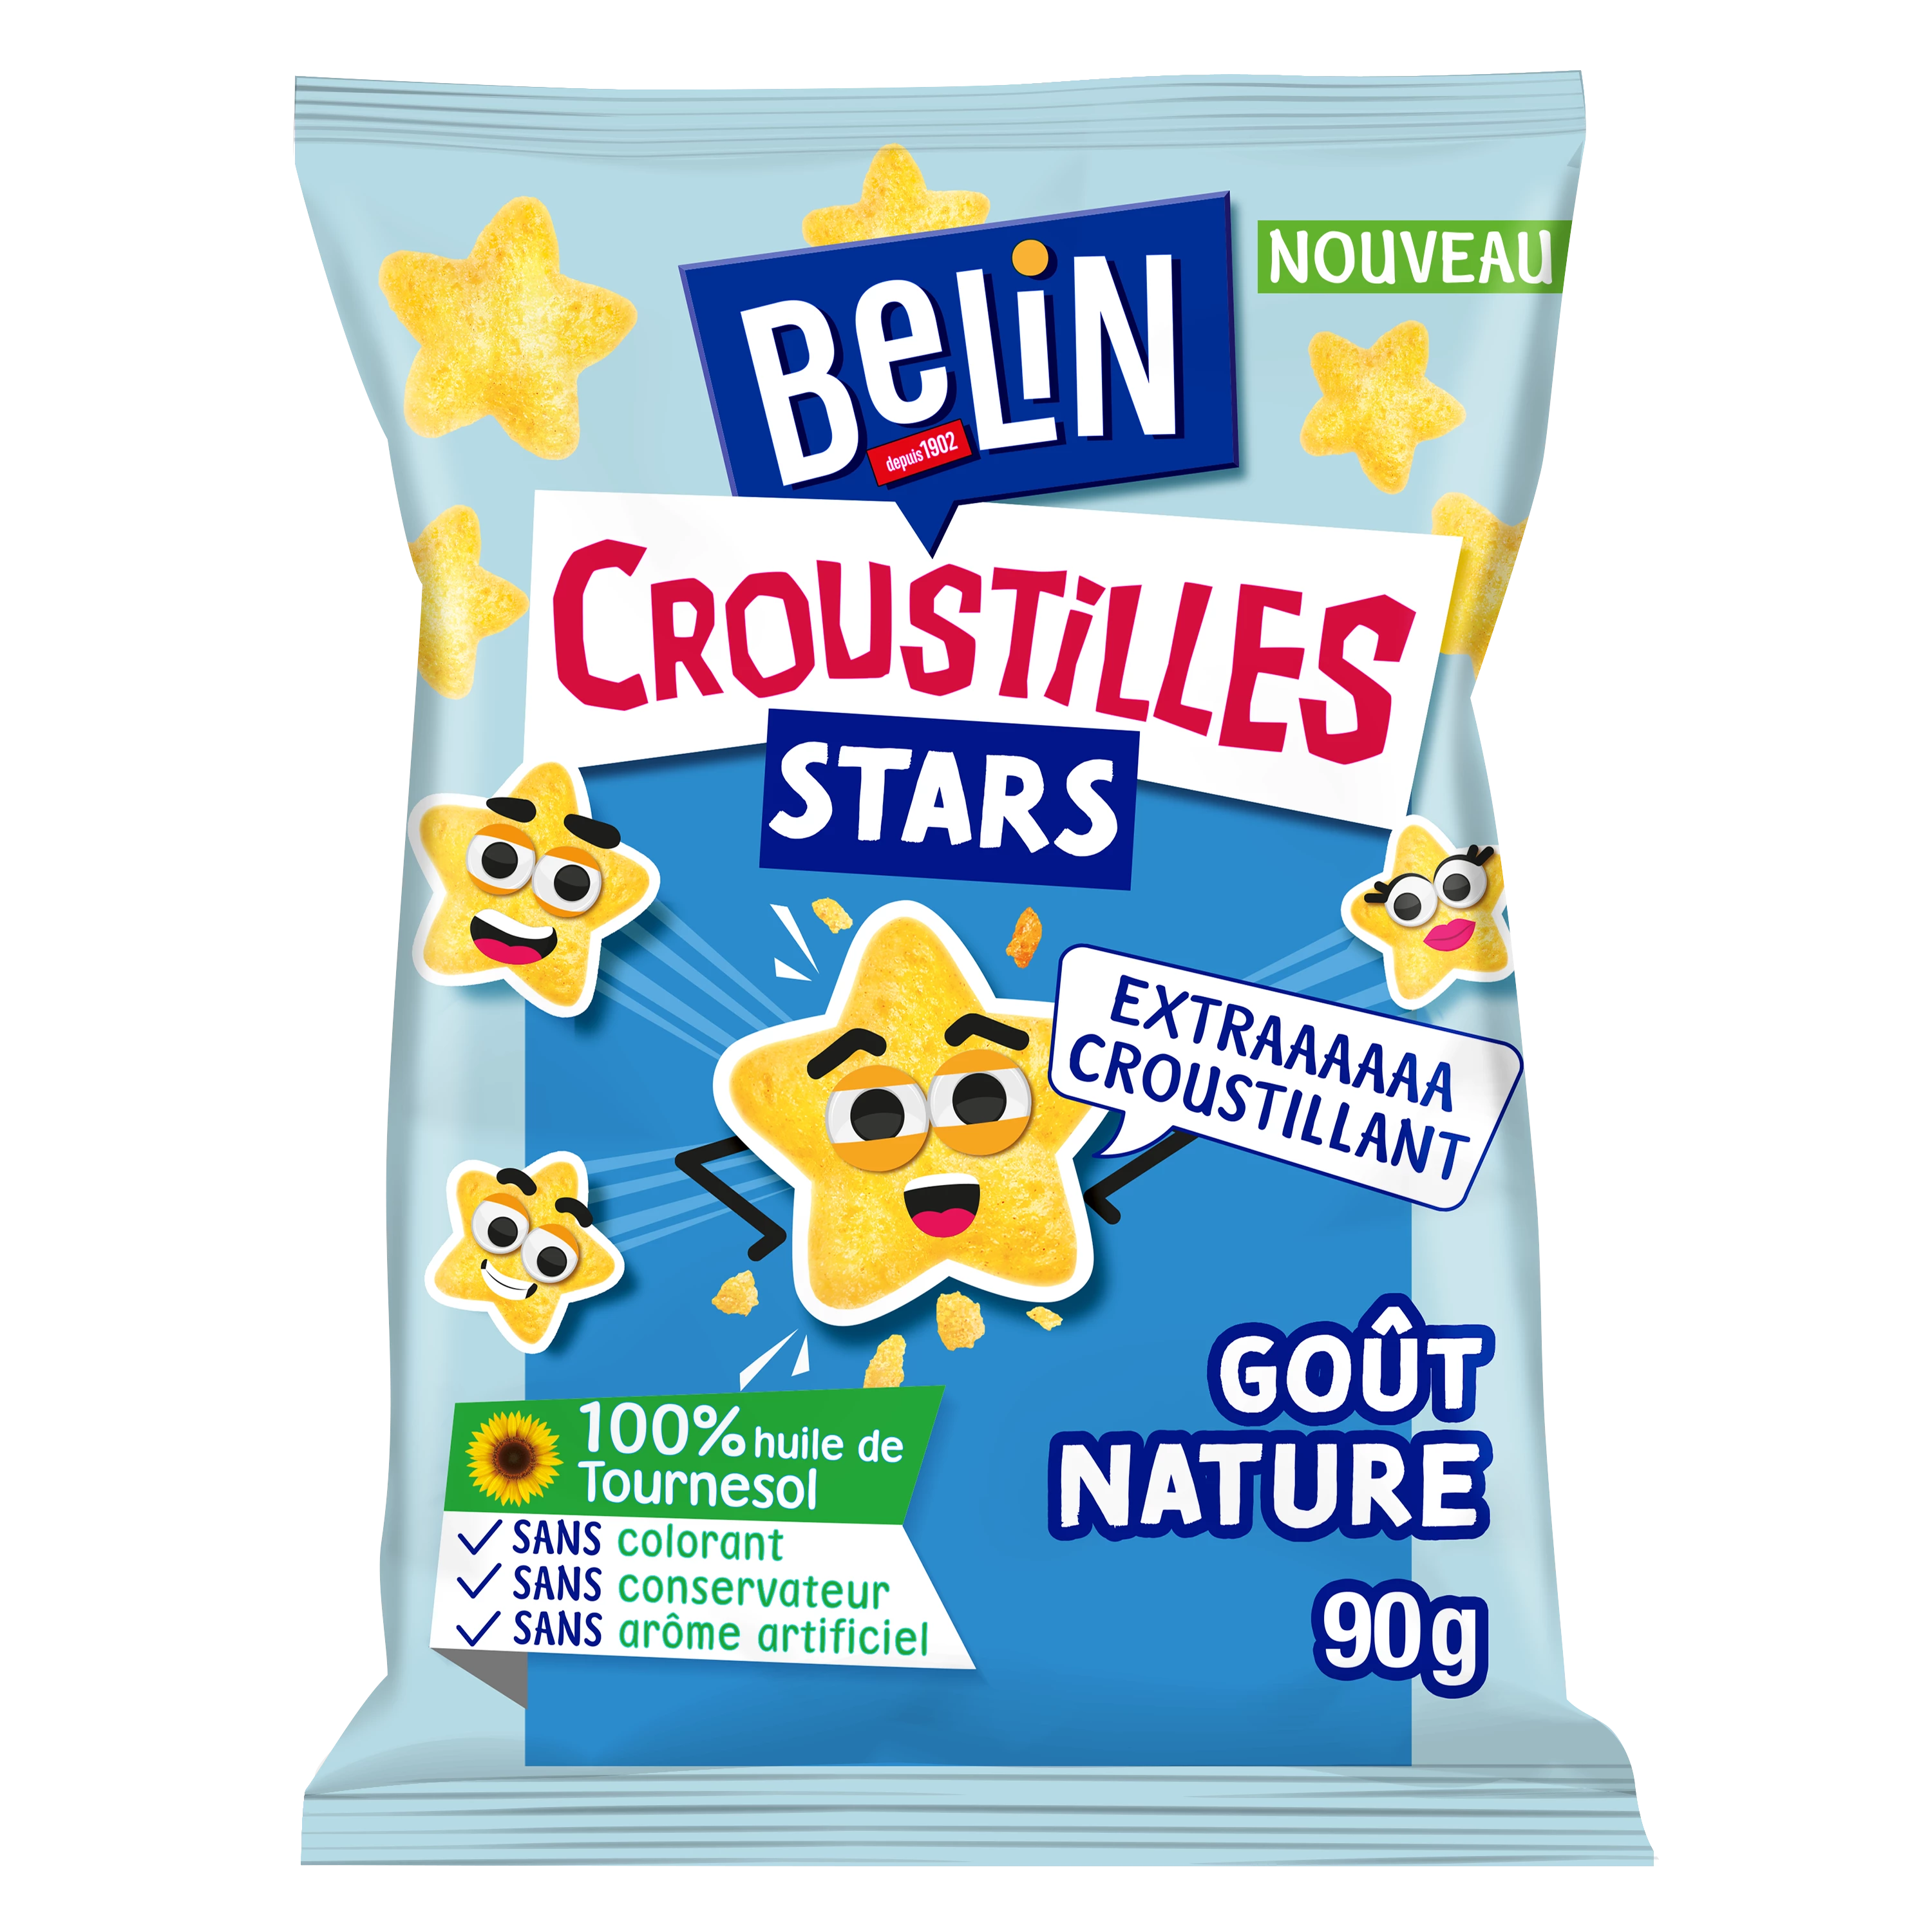 Aperitif Biscuits Natural Flavor Croustil les Stars, 90g - BELIN